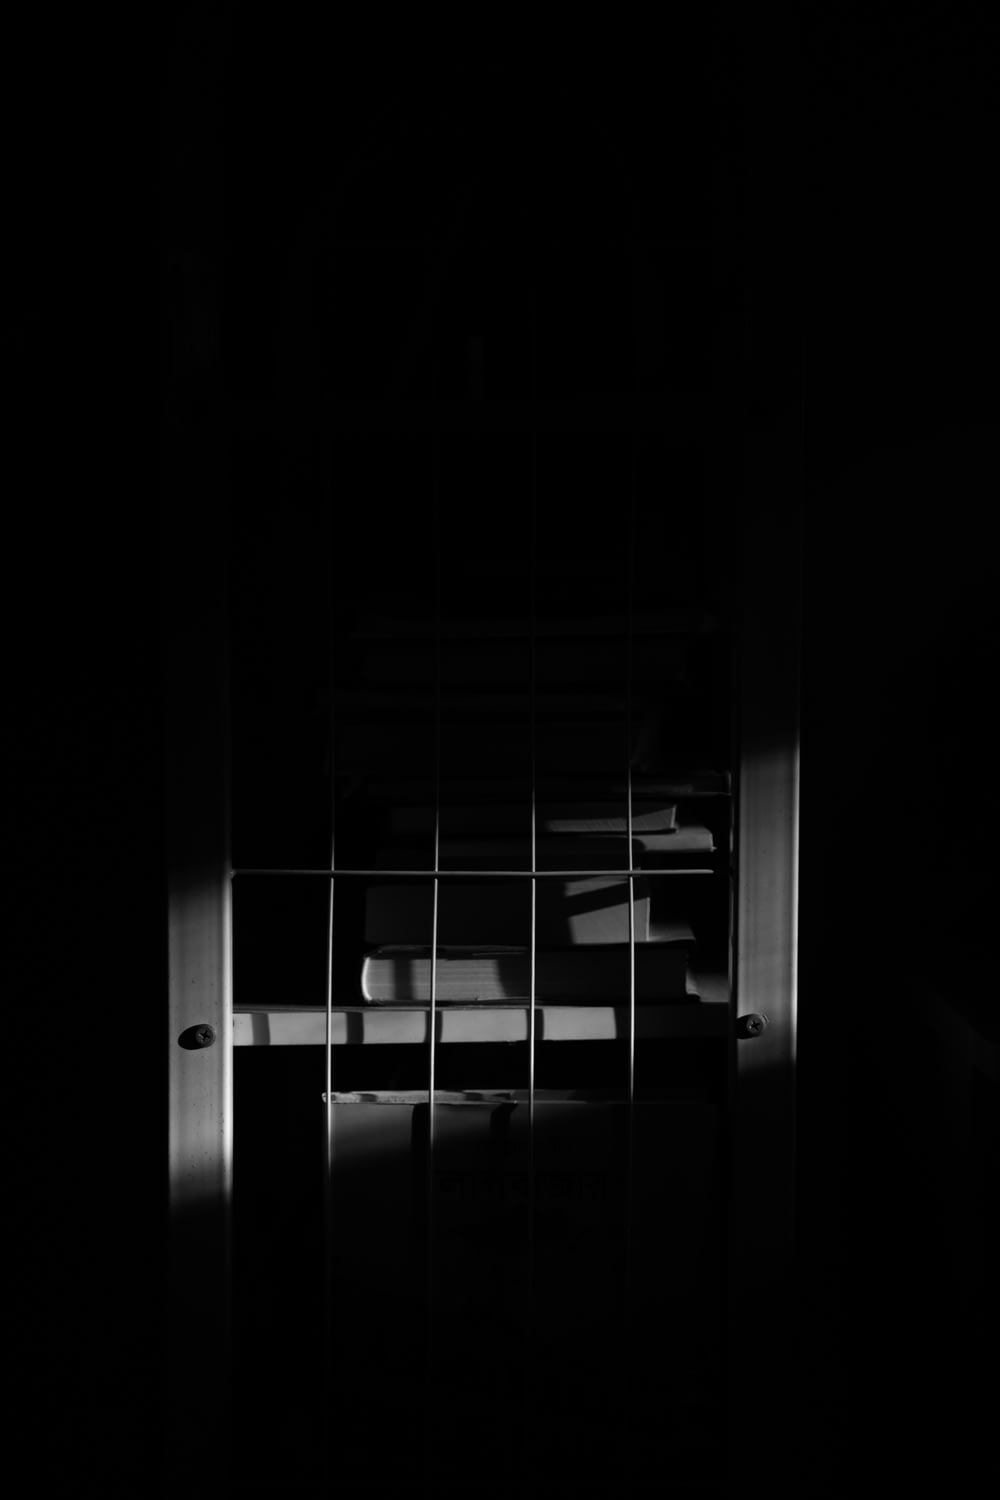 Una foto in bianco e nero di una finestra in una stanza buia